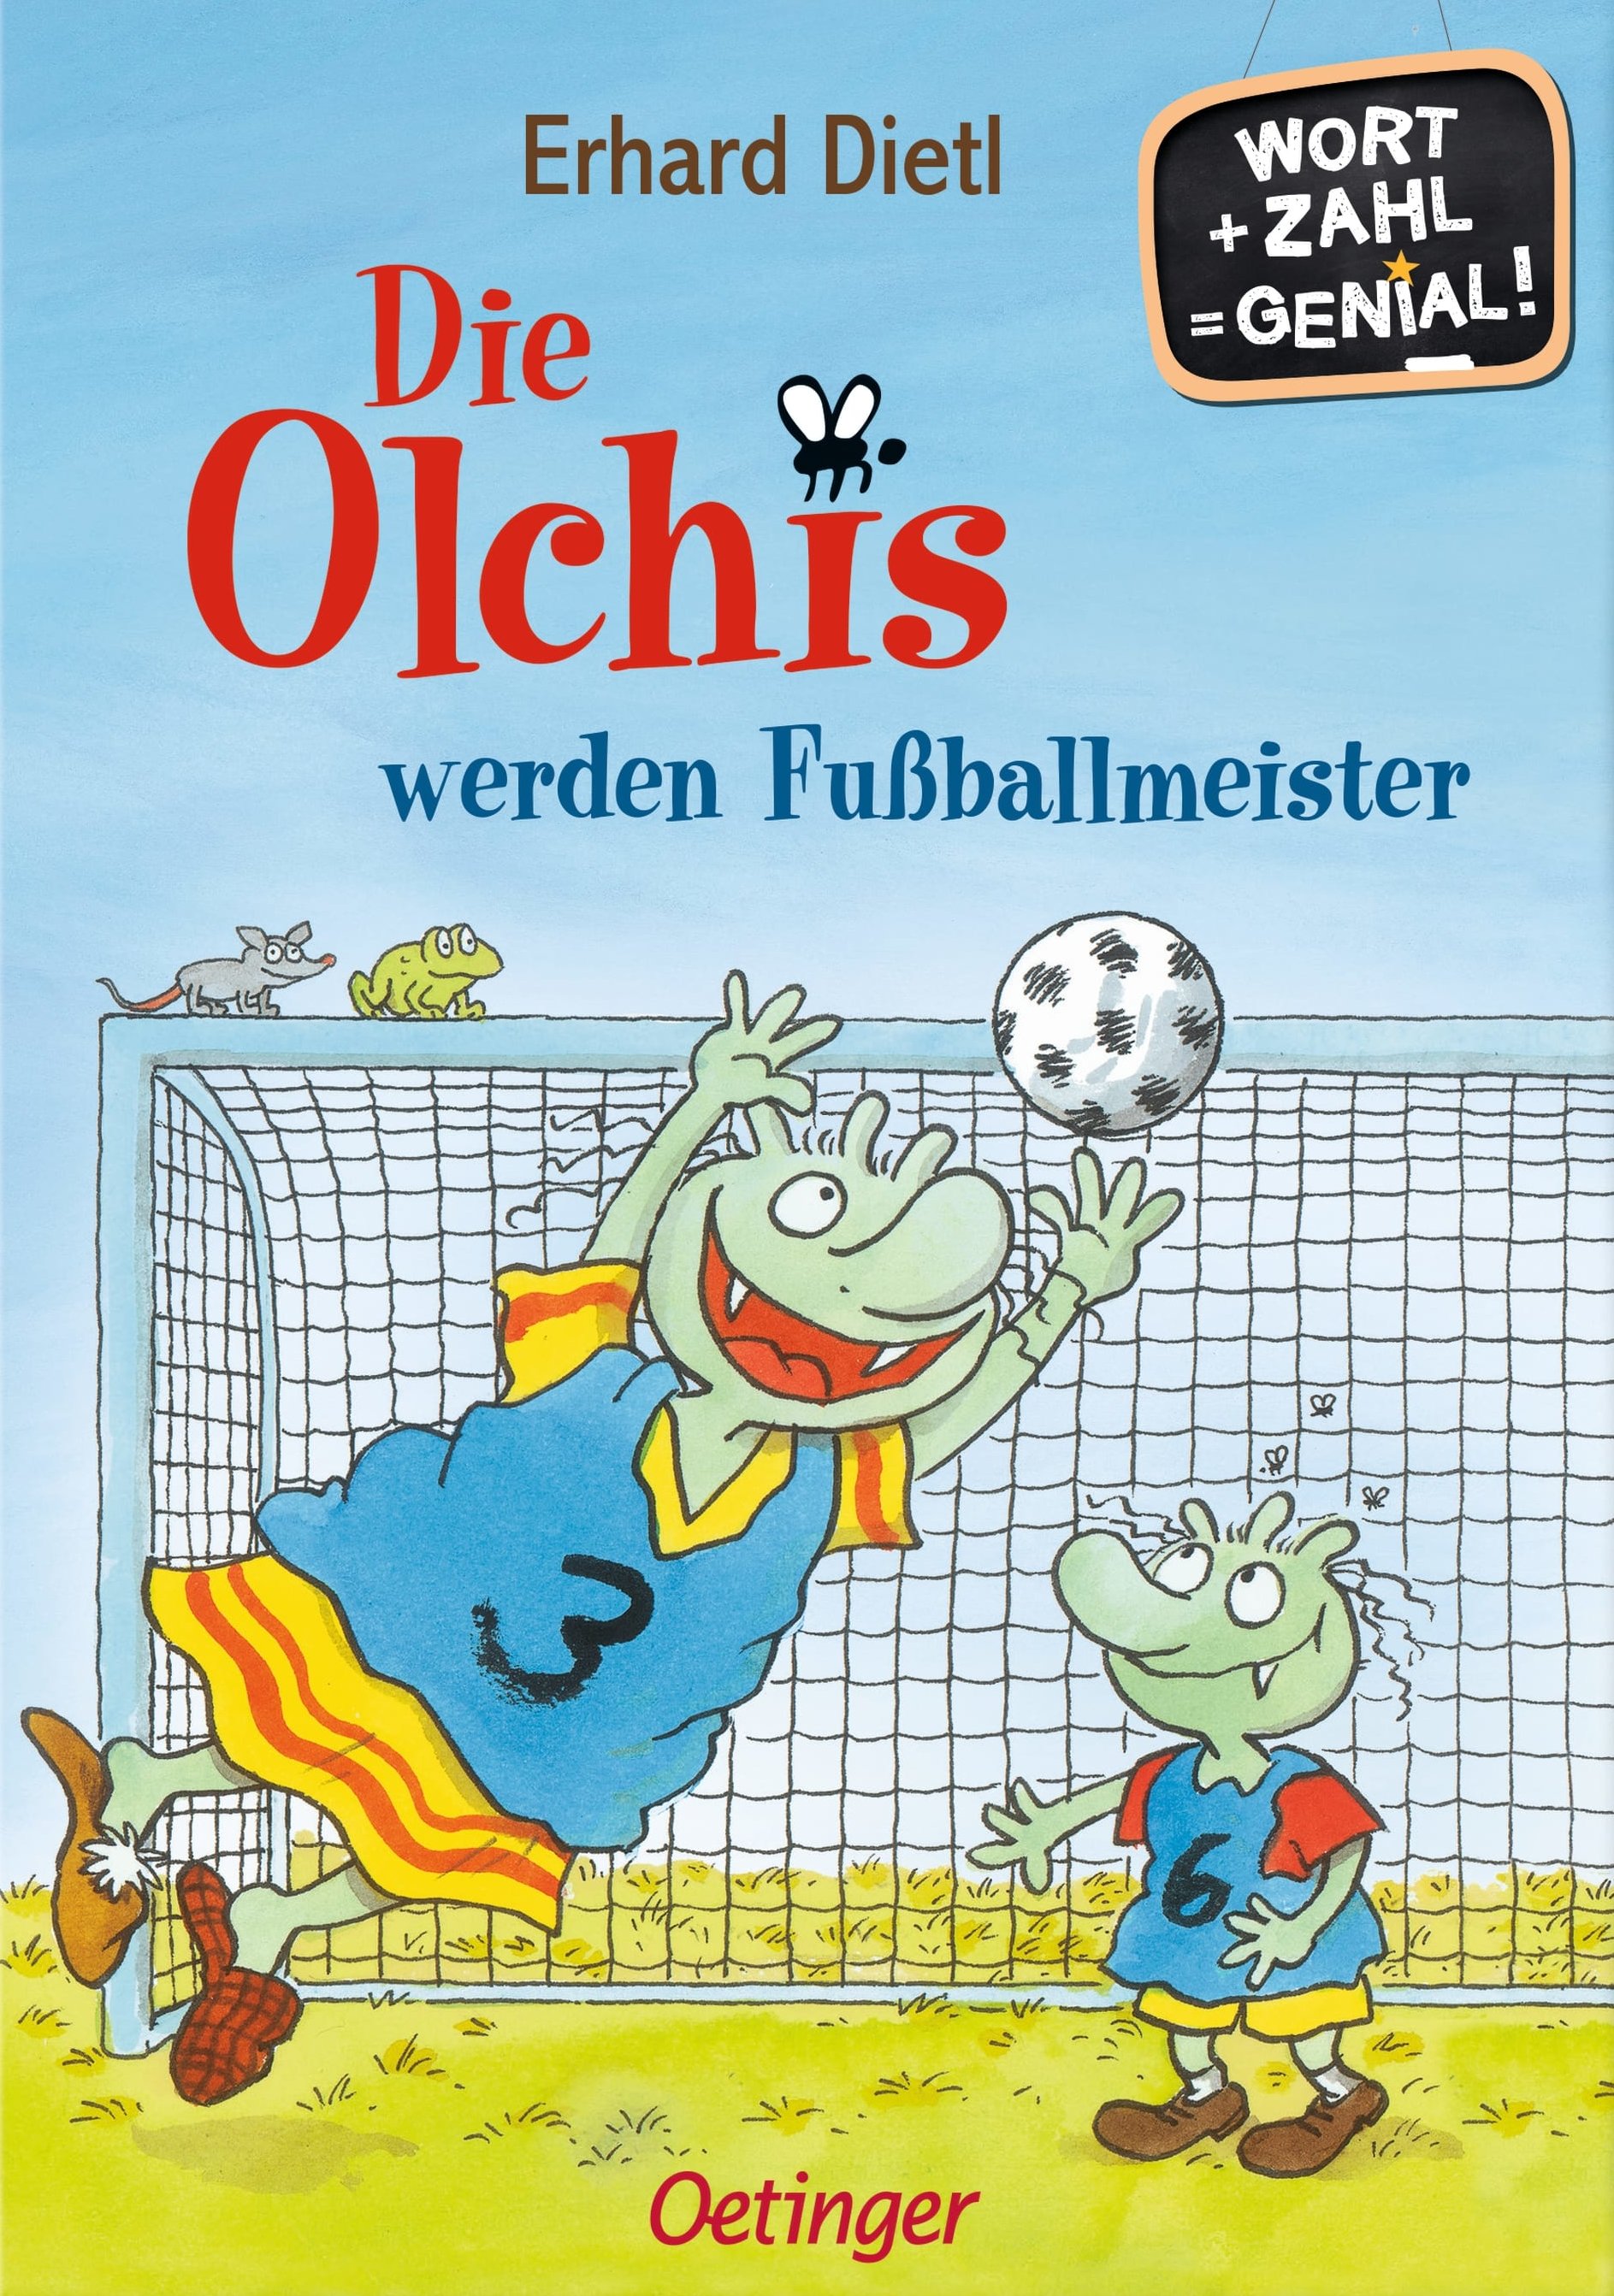 Buchcover "Die Olchis werden Fußballmeister", Oetinger